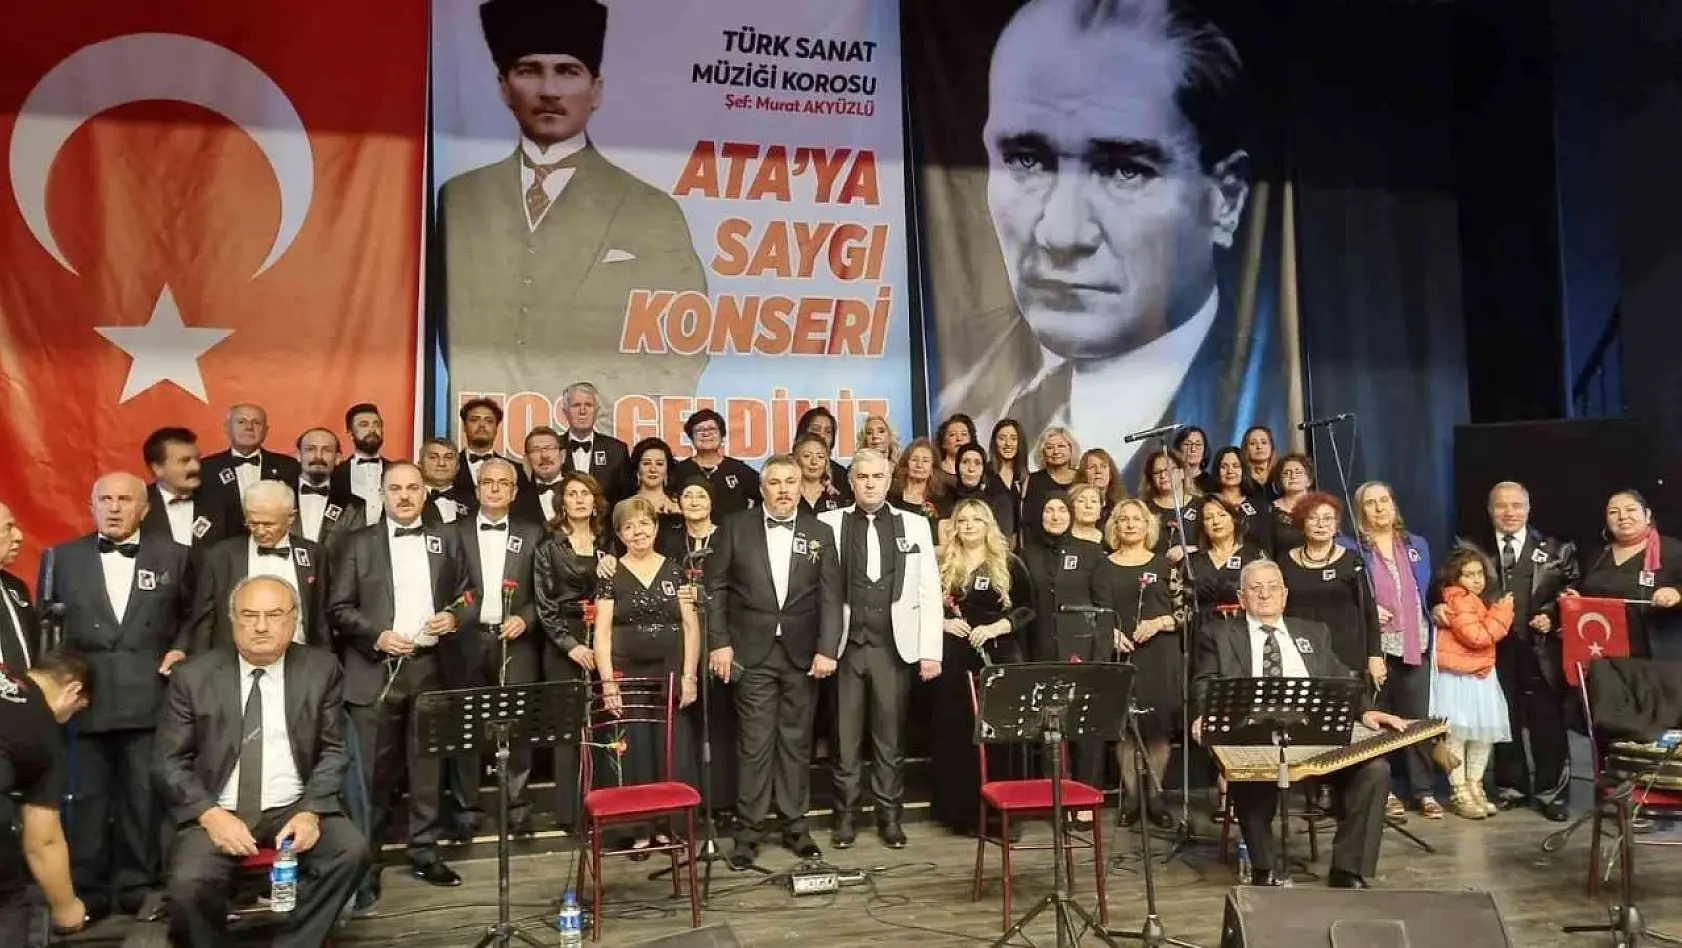 Aydın Büyükşehir Belediyesi Ata'ya saygı konseri düzenledi